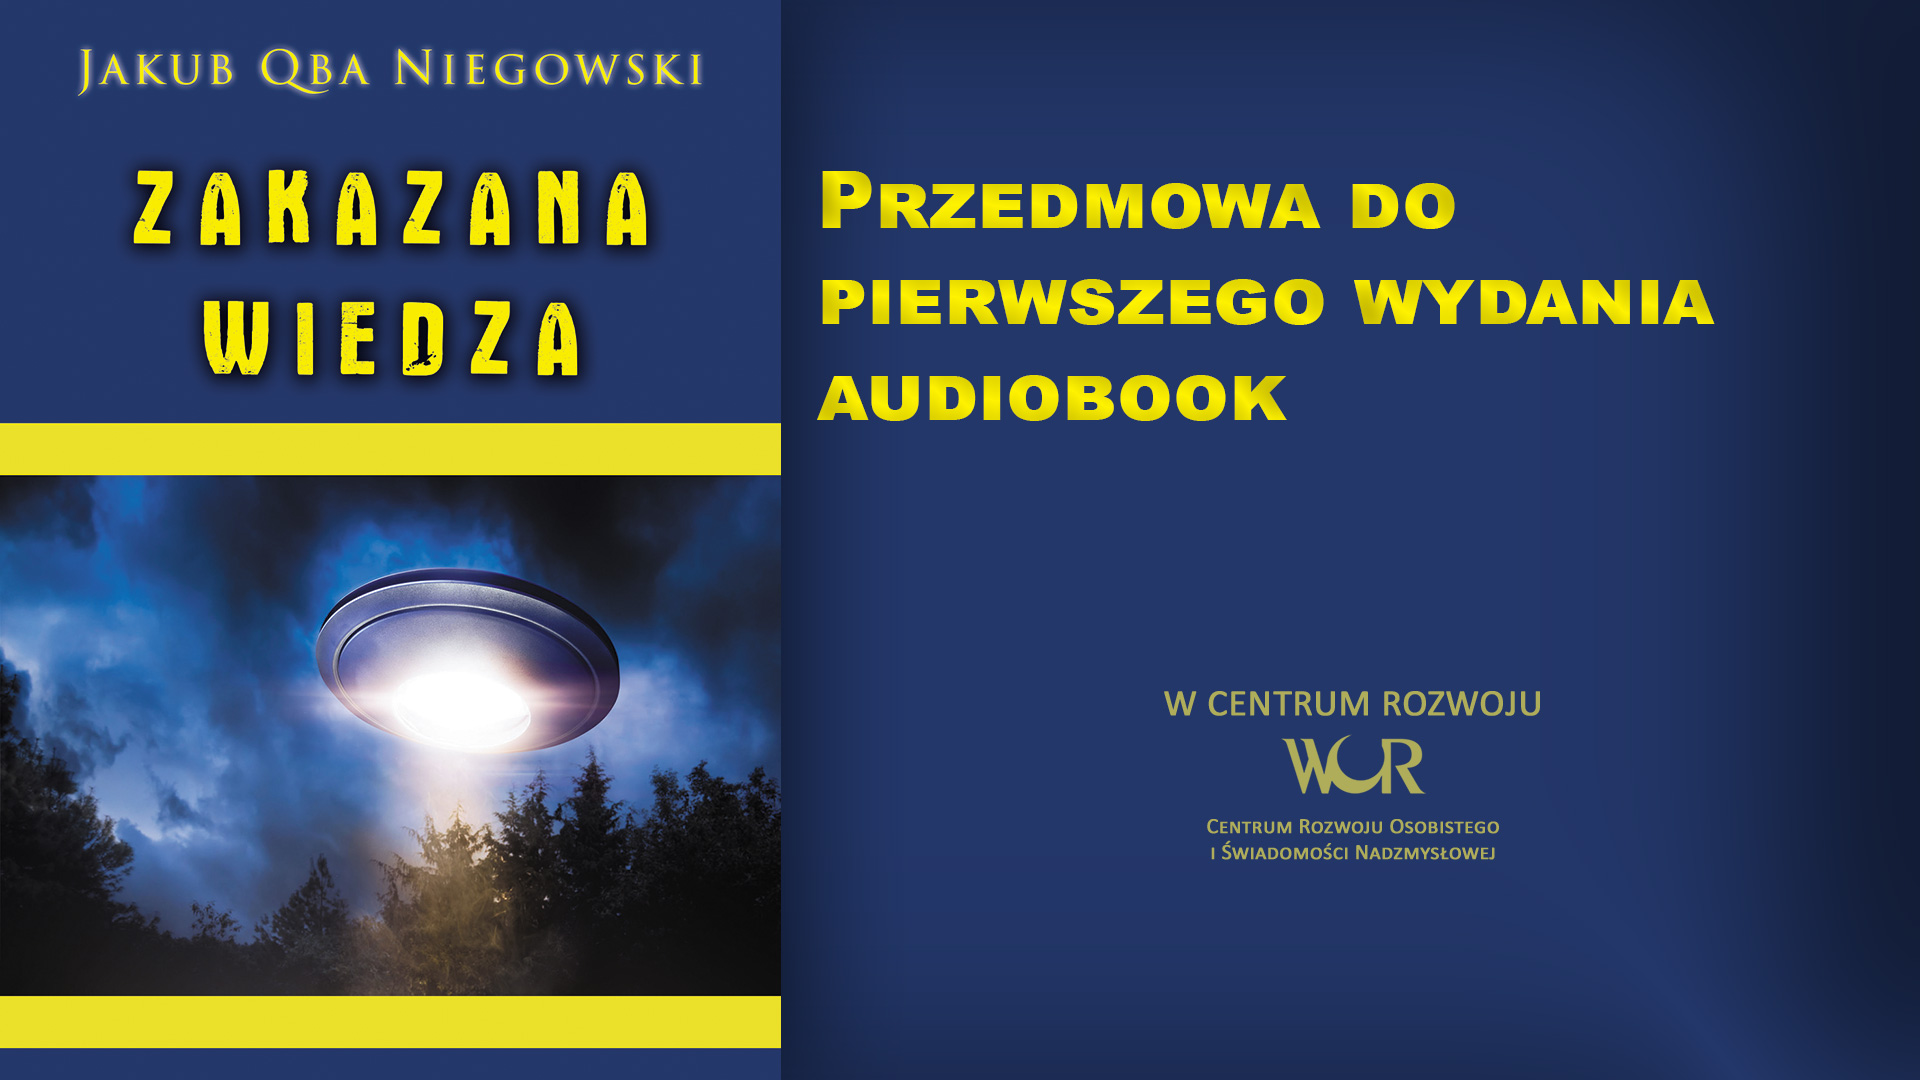 Jakub Qba Niegowski: „Zakazana Wiedza” – cała książka dostępna teraz online!